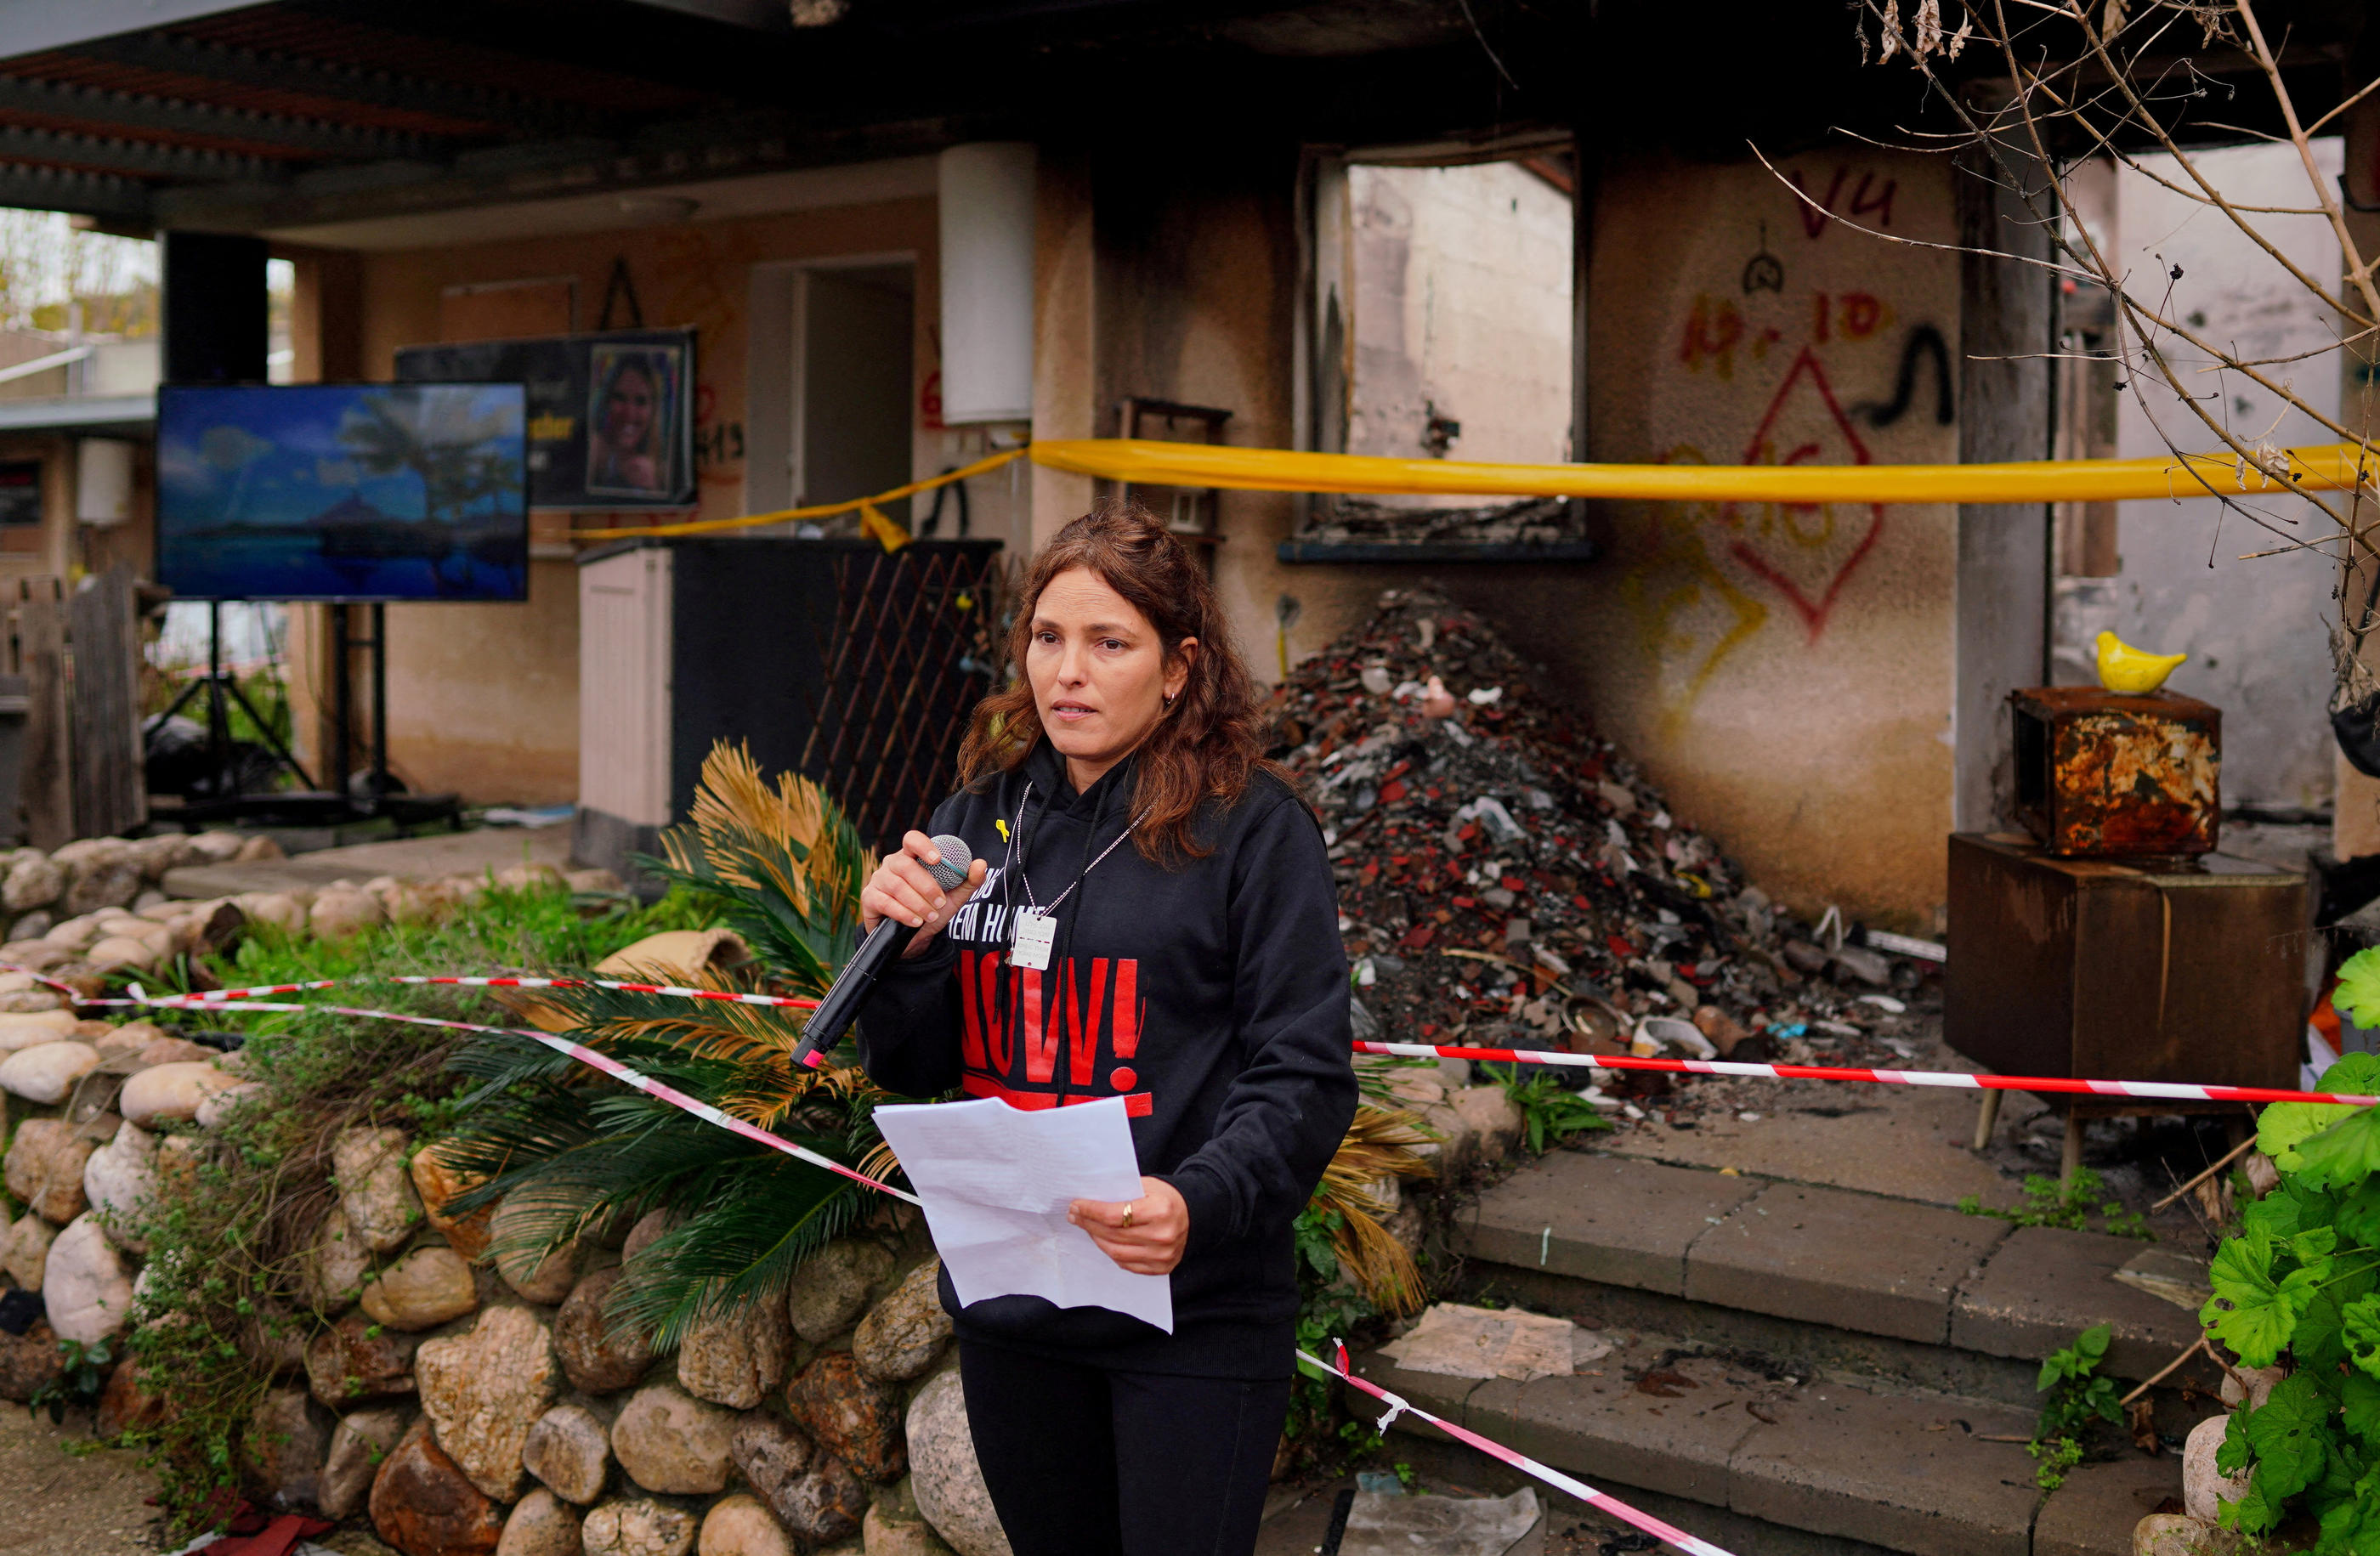 Amit Soussana avait pris la parole fin janvier devant son domicile de Kfar Aza, détruit et brûlé lors des attaques du 7 octobre. REUTERS/Alexandre Meneghini/File Photo